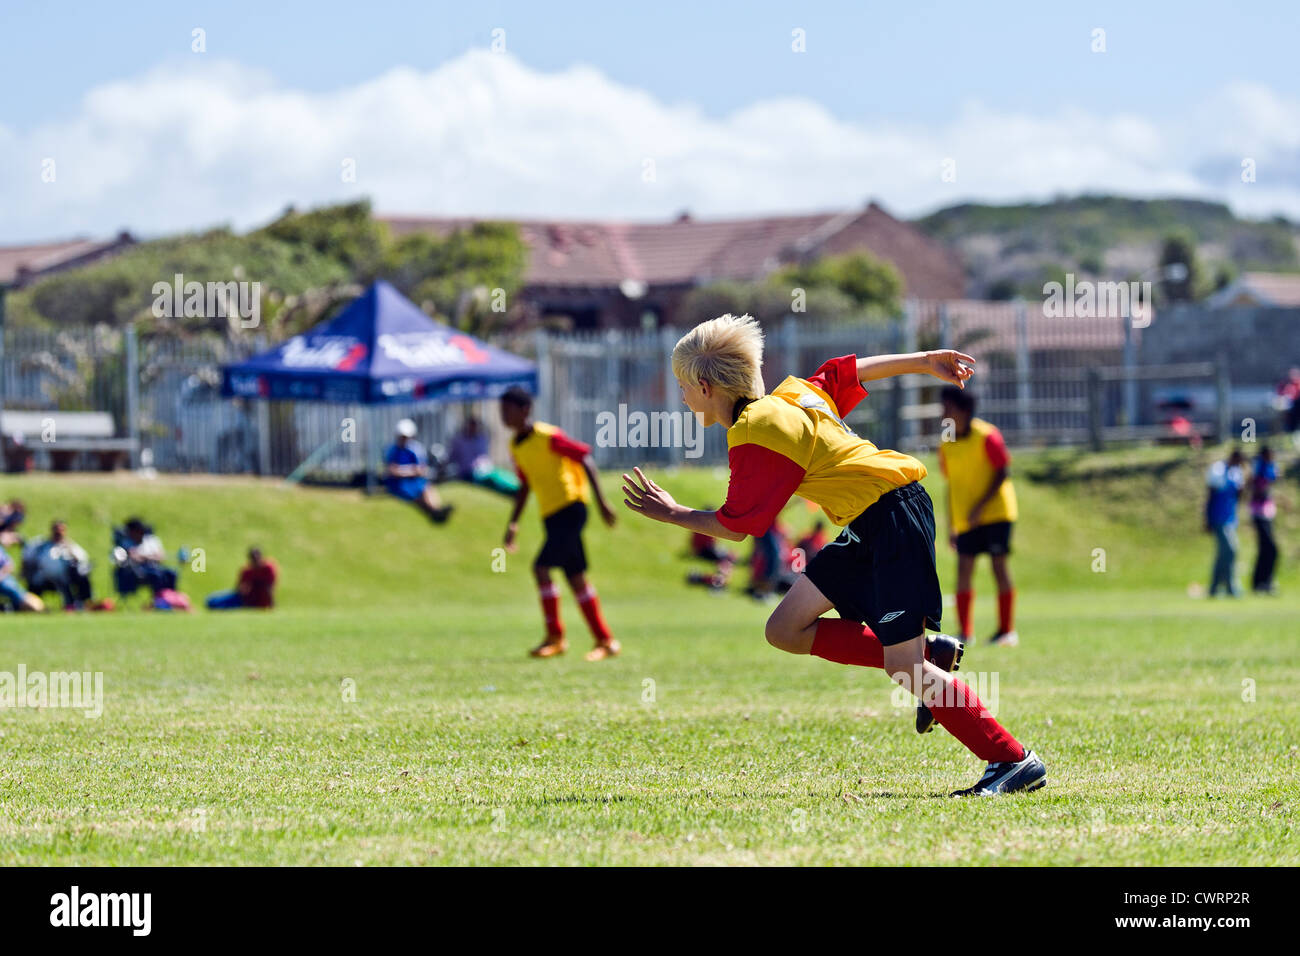 L'équipe des jeunes de football Strandfontain au tournoi, Cape Town, Afrique du Sud Banque D'Images